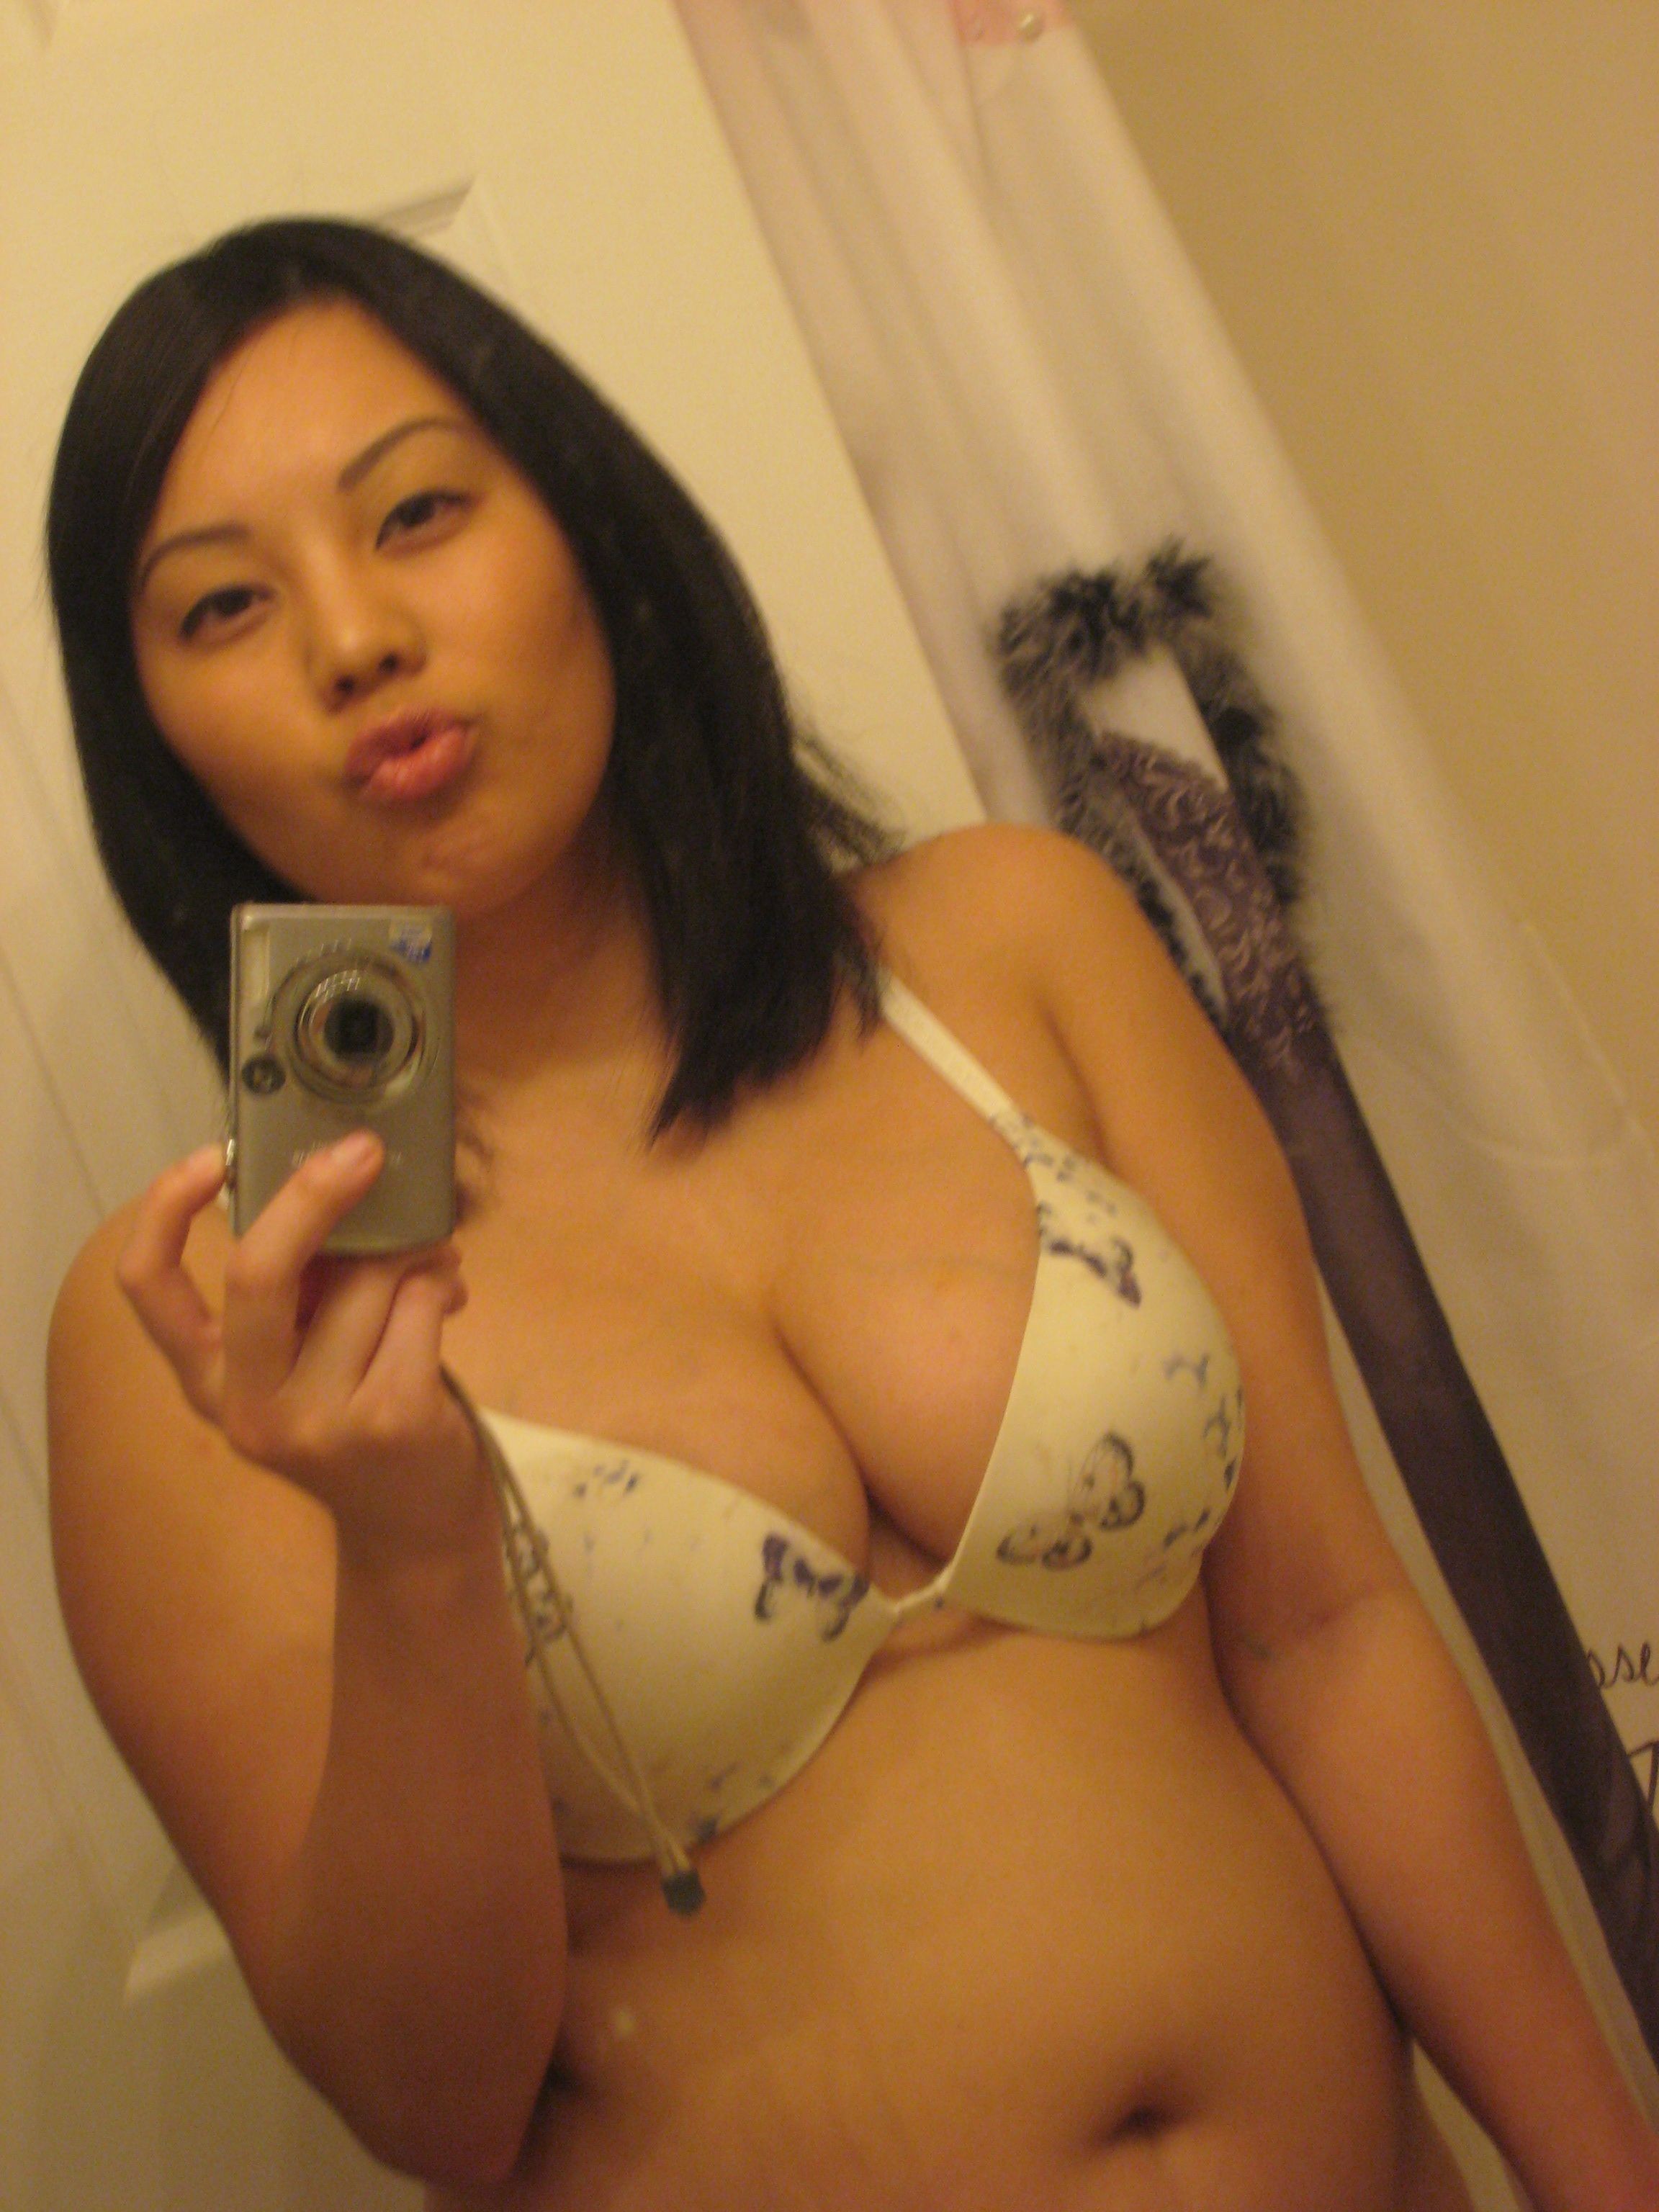 bonnie hogarth share busty asian nude selfie photos